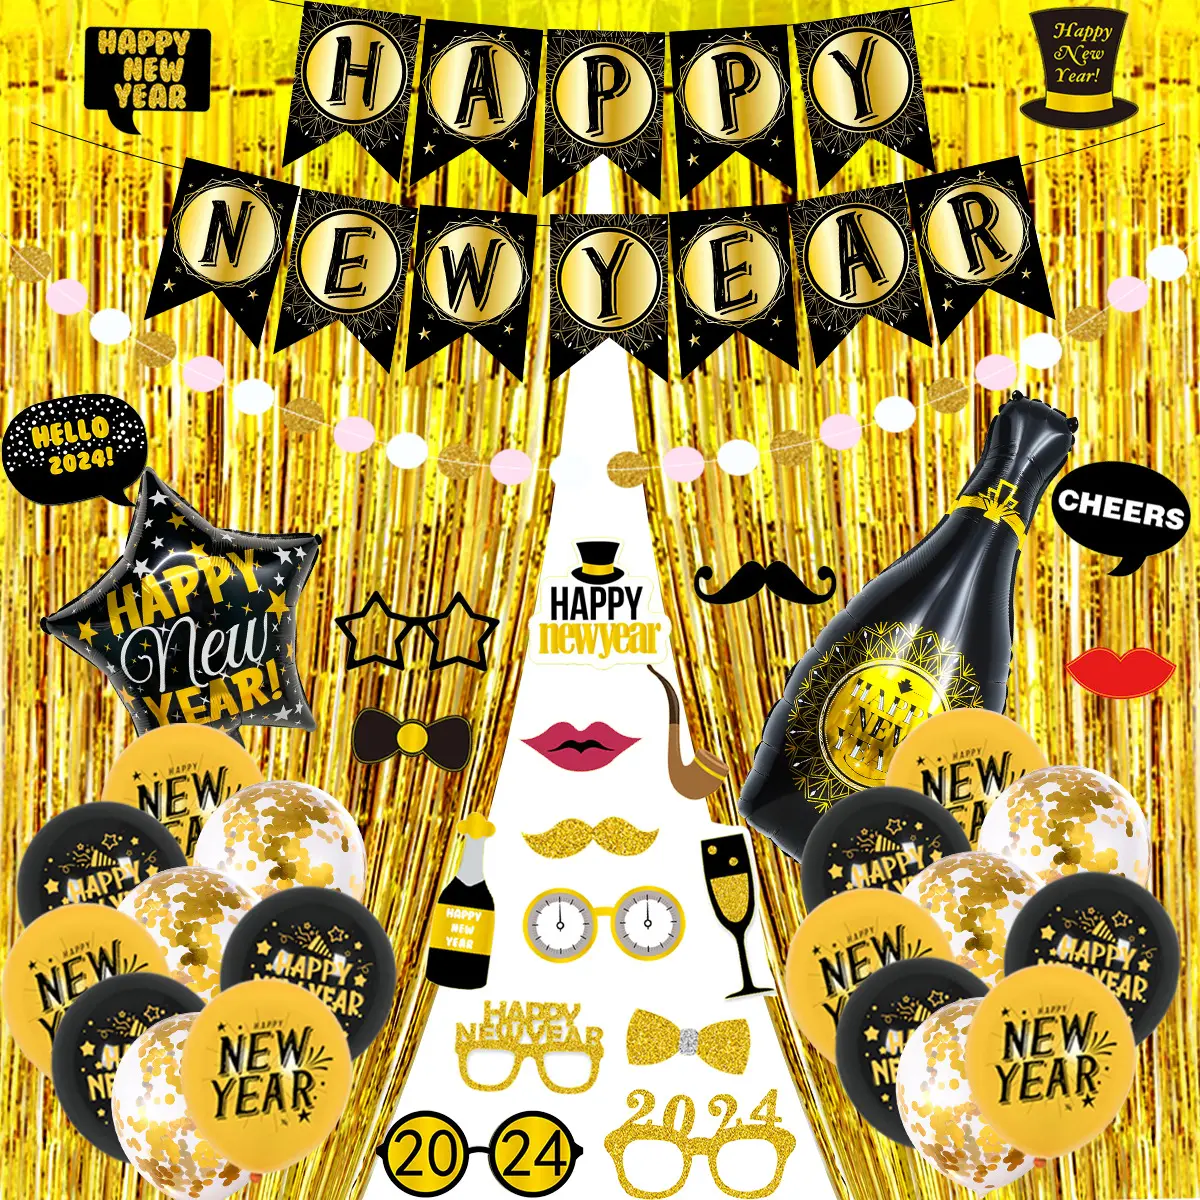 नए साल का जश्न फ़ॉइल गुब्बारे, काले सोने की थीम वाले गुब्बारे, पार्टी की सजावट सबसे ज्यादा बिक रहे हैं